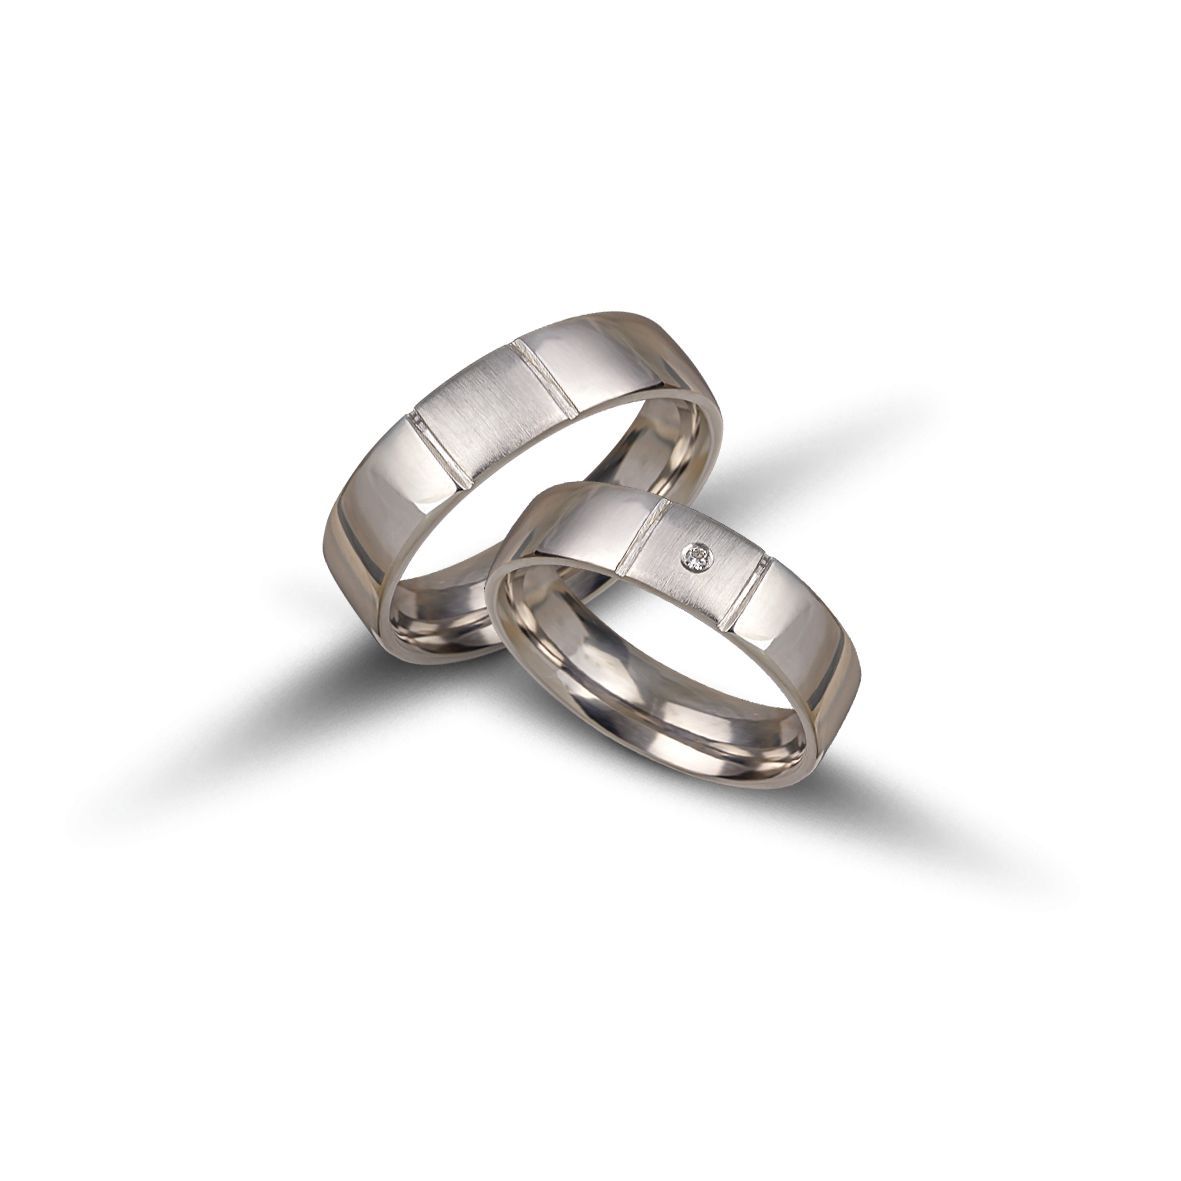 White gold wedding rings 5mm (code VK2003/50)